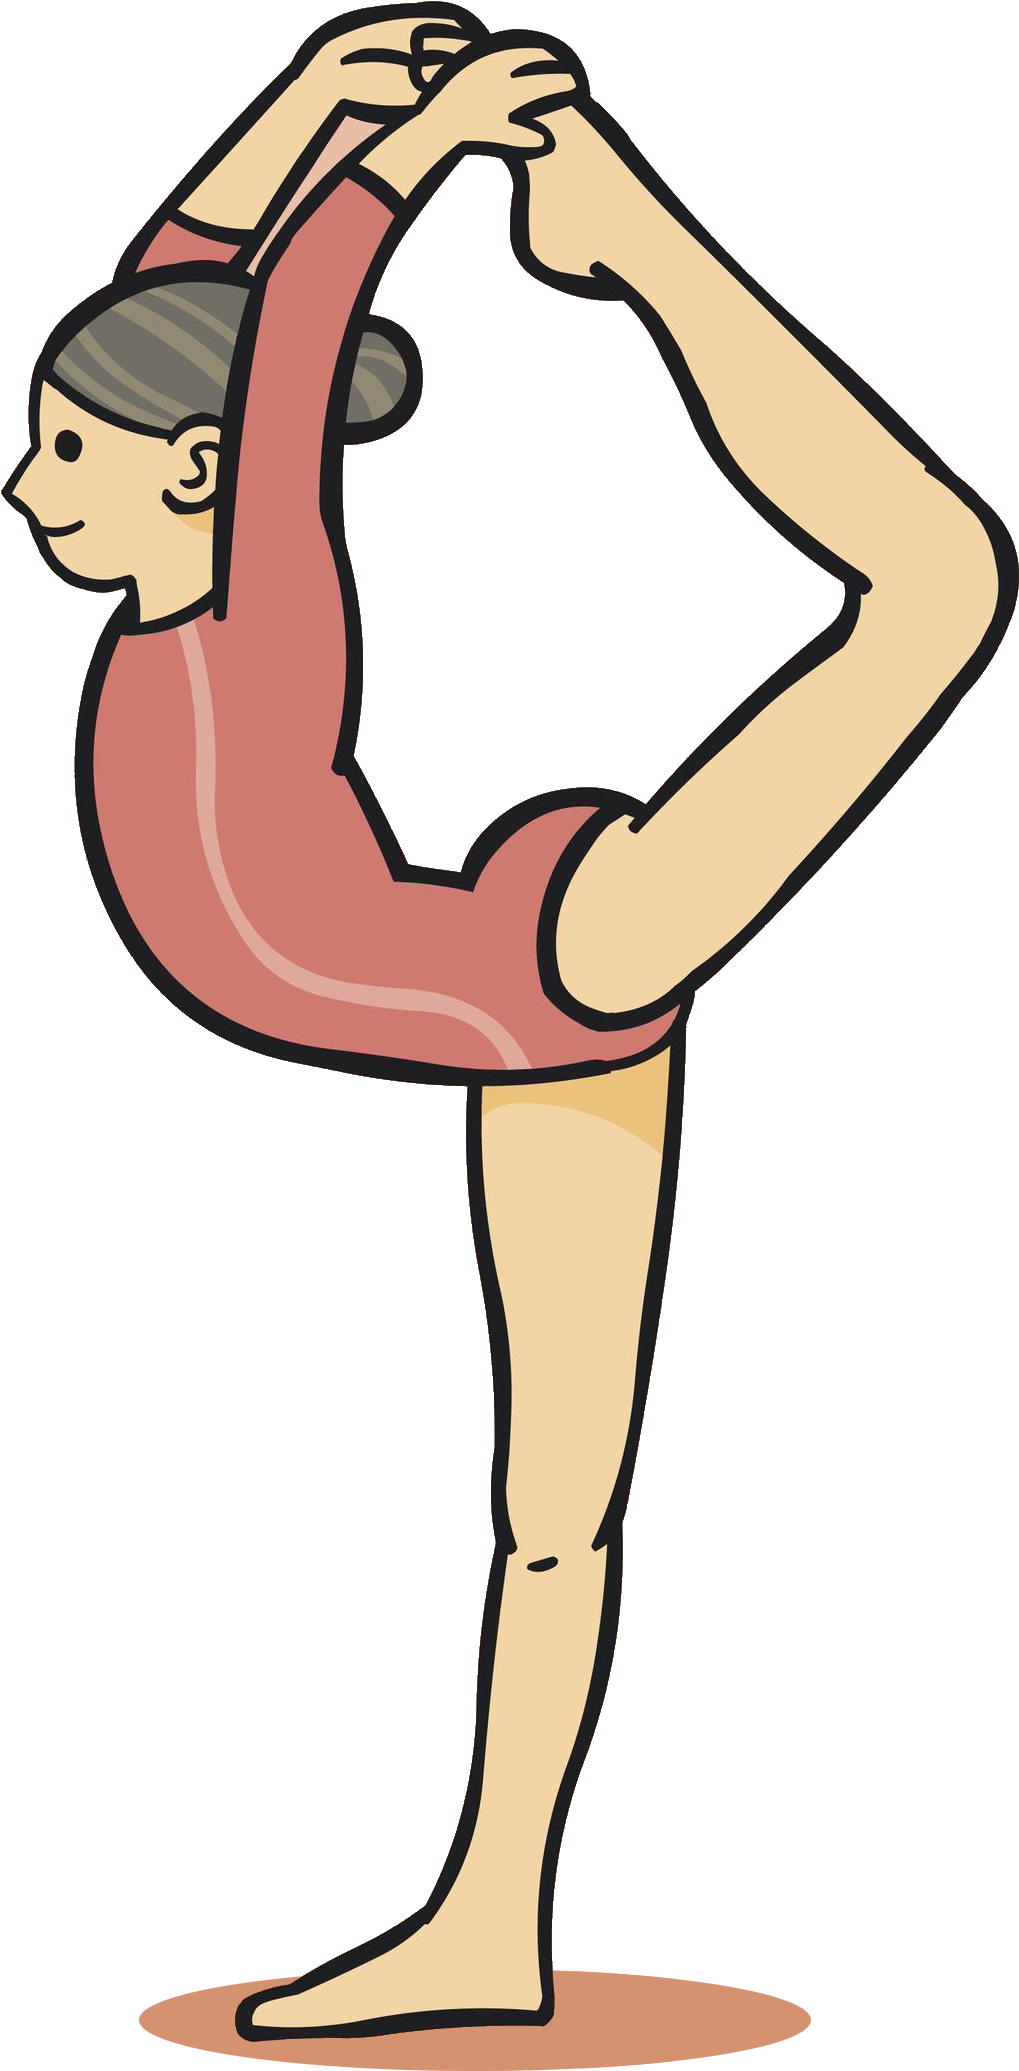 Rhythmic Gymnastics Animation Drawing - Gymnastics Animation (1590x2196)